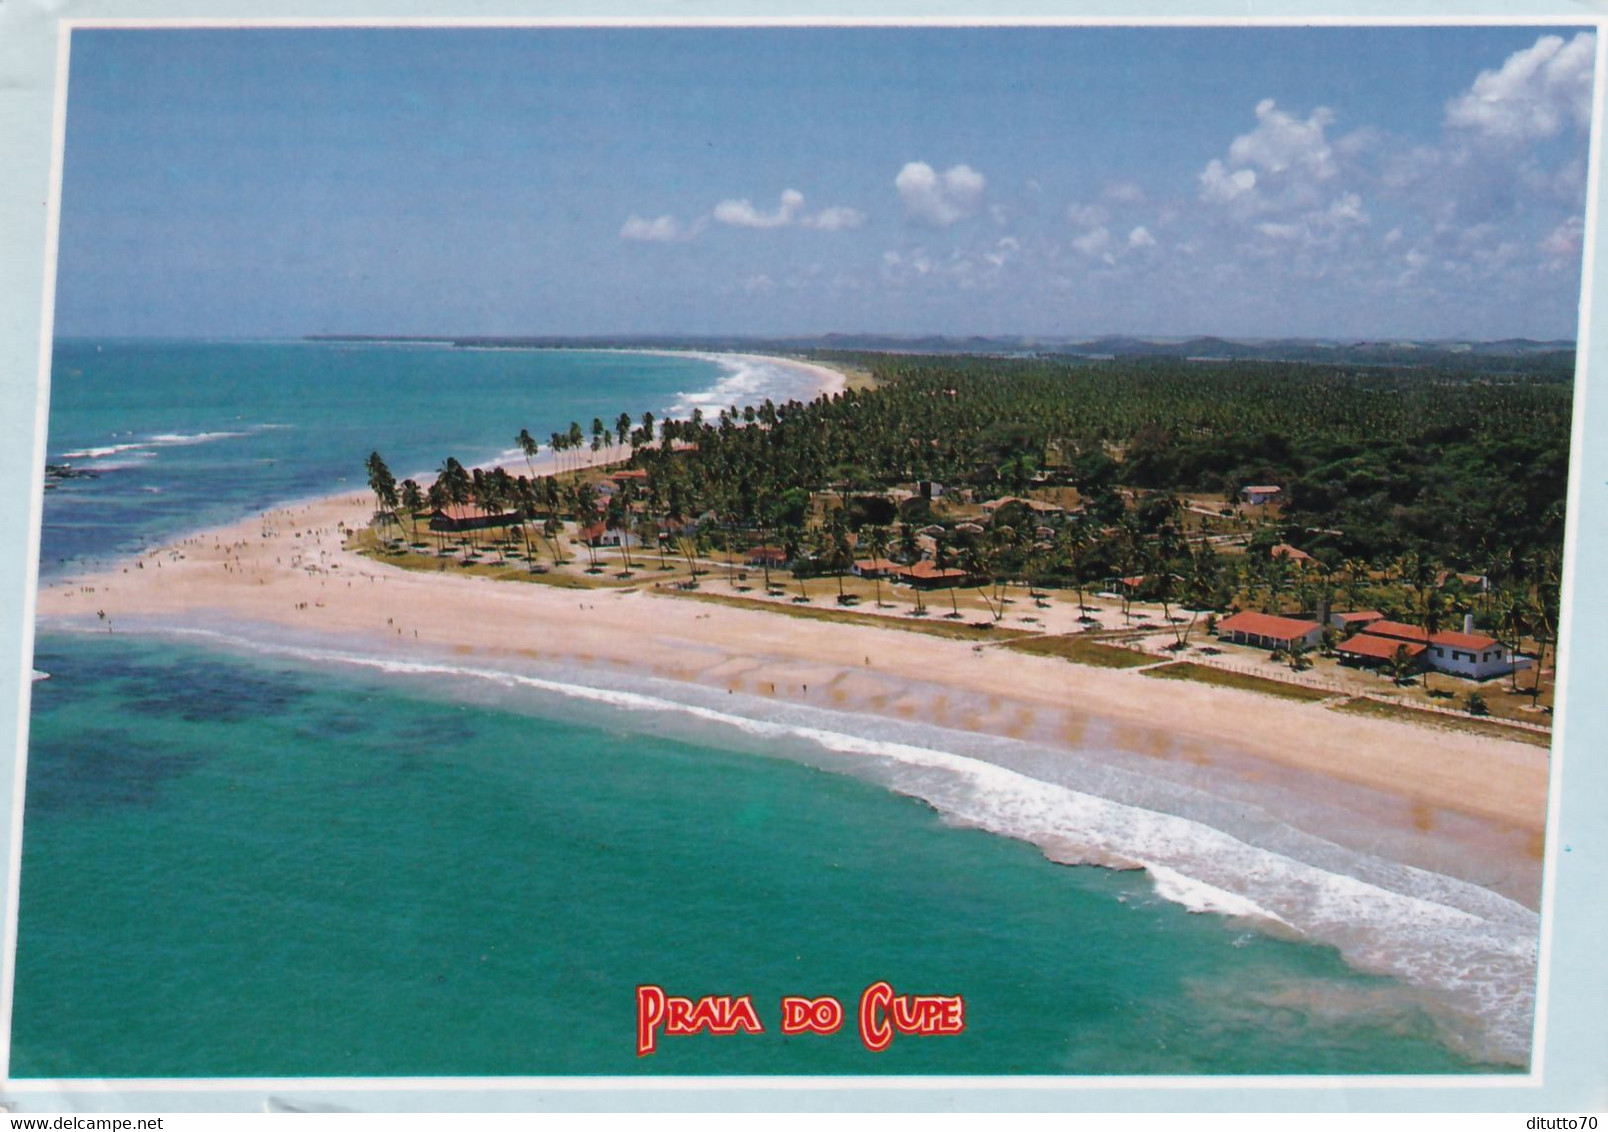 Ipojuca Pernambuco - Vista Aerea Da Praia Do Cupe - Formato Grande Viaggiata – E 17 - Cuiabá